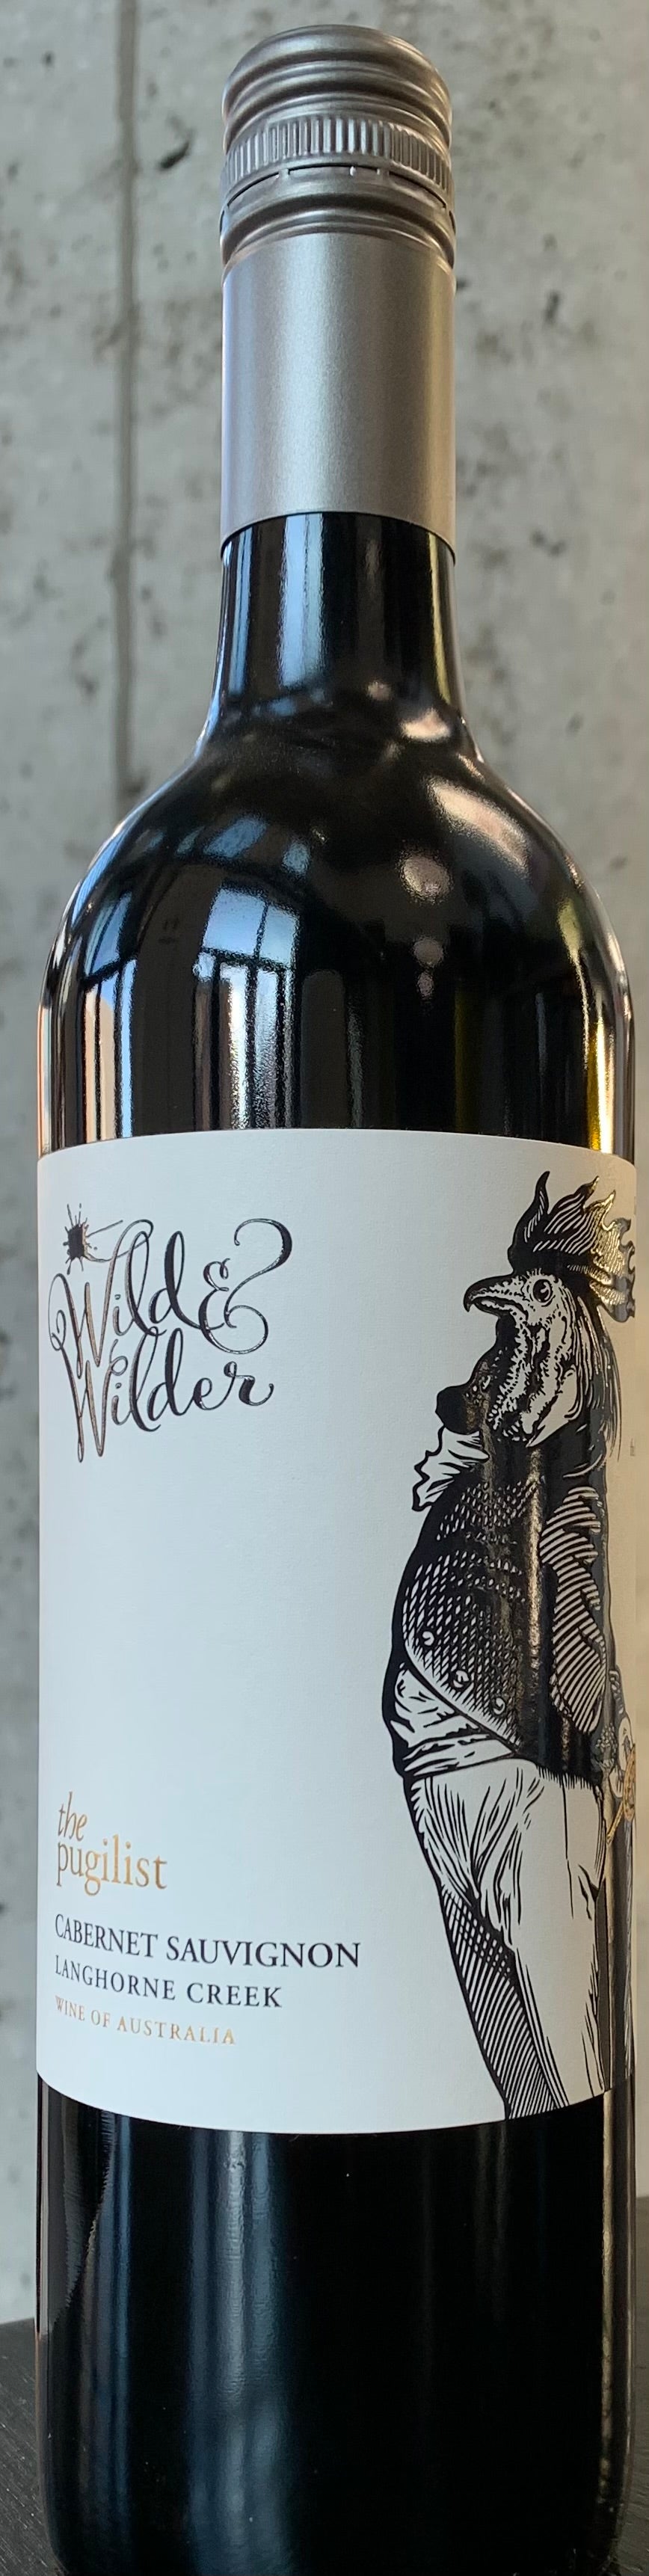 Wild & Wilder "The Pugilist" Cabernet Sauvignon '18